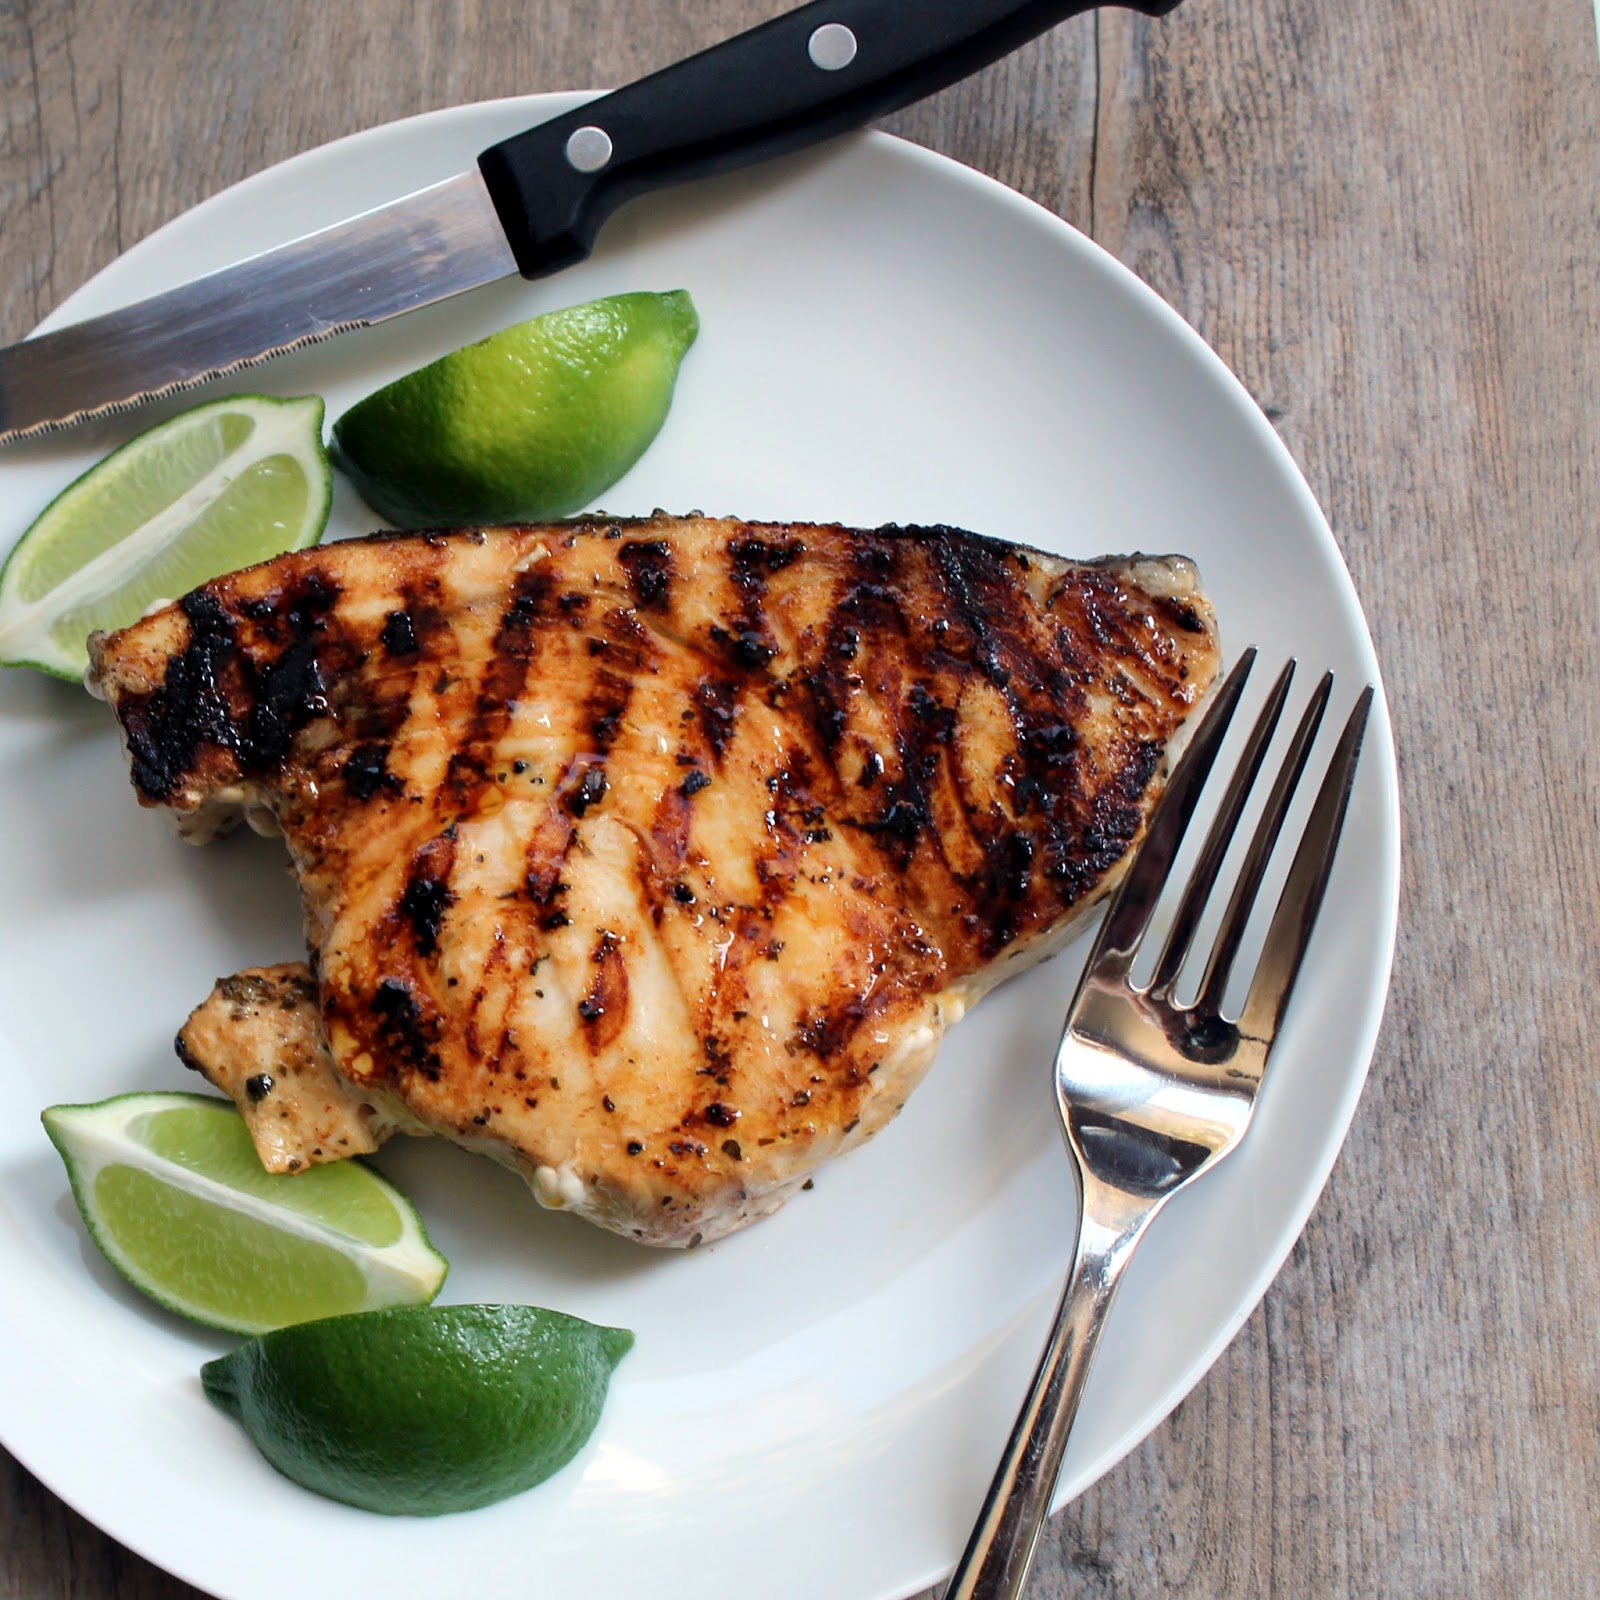 How do you grill swordfish?